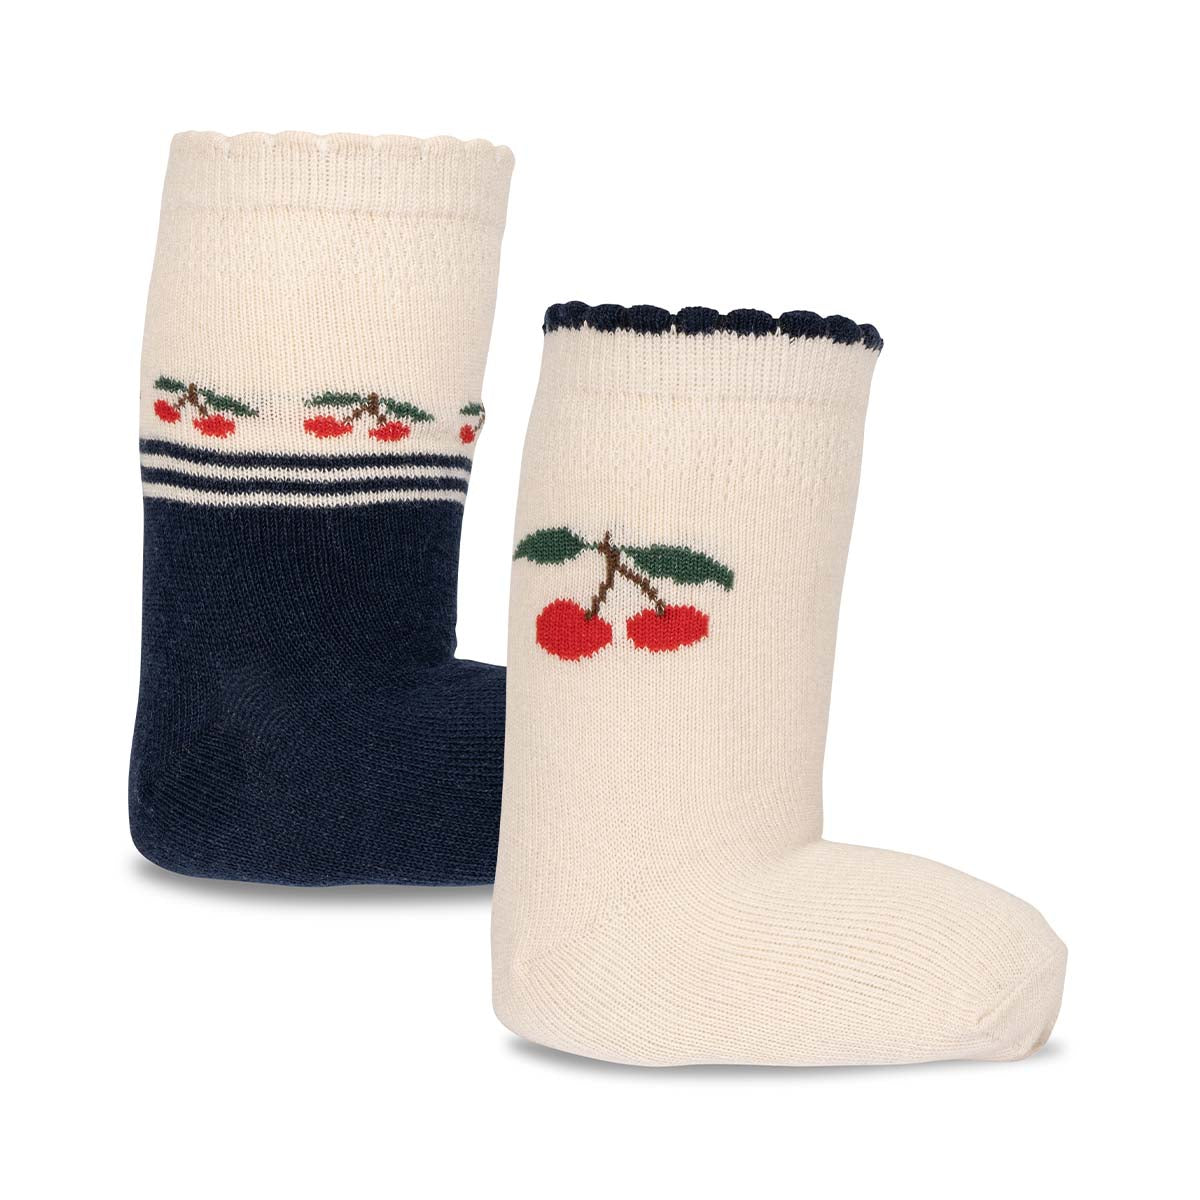 Deze schattige sokken van Konges Slojd zijn niet alleen lekker warm, maar zien er ook superleuk uit! Ze geven een schattig detail aan de outfit van jouw kleintje. De sokken zijn vrolijk gekleurd en hebben een schattig design van kersen.  De sokken komen in een handige set van 2. VanZus